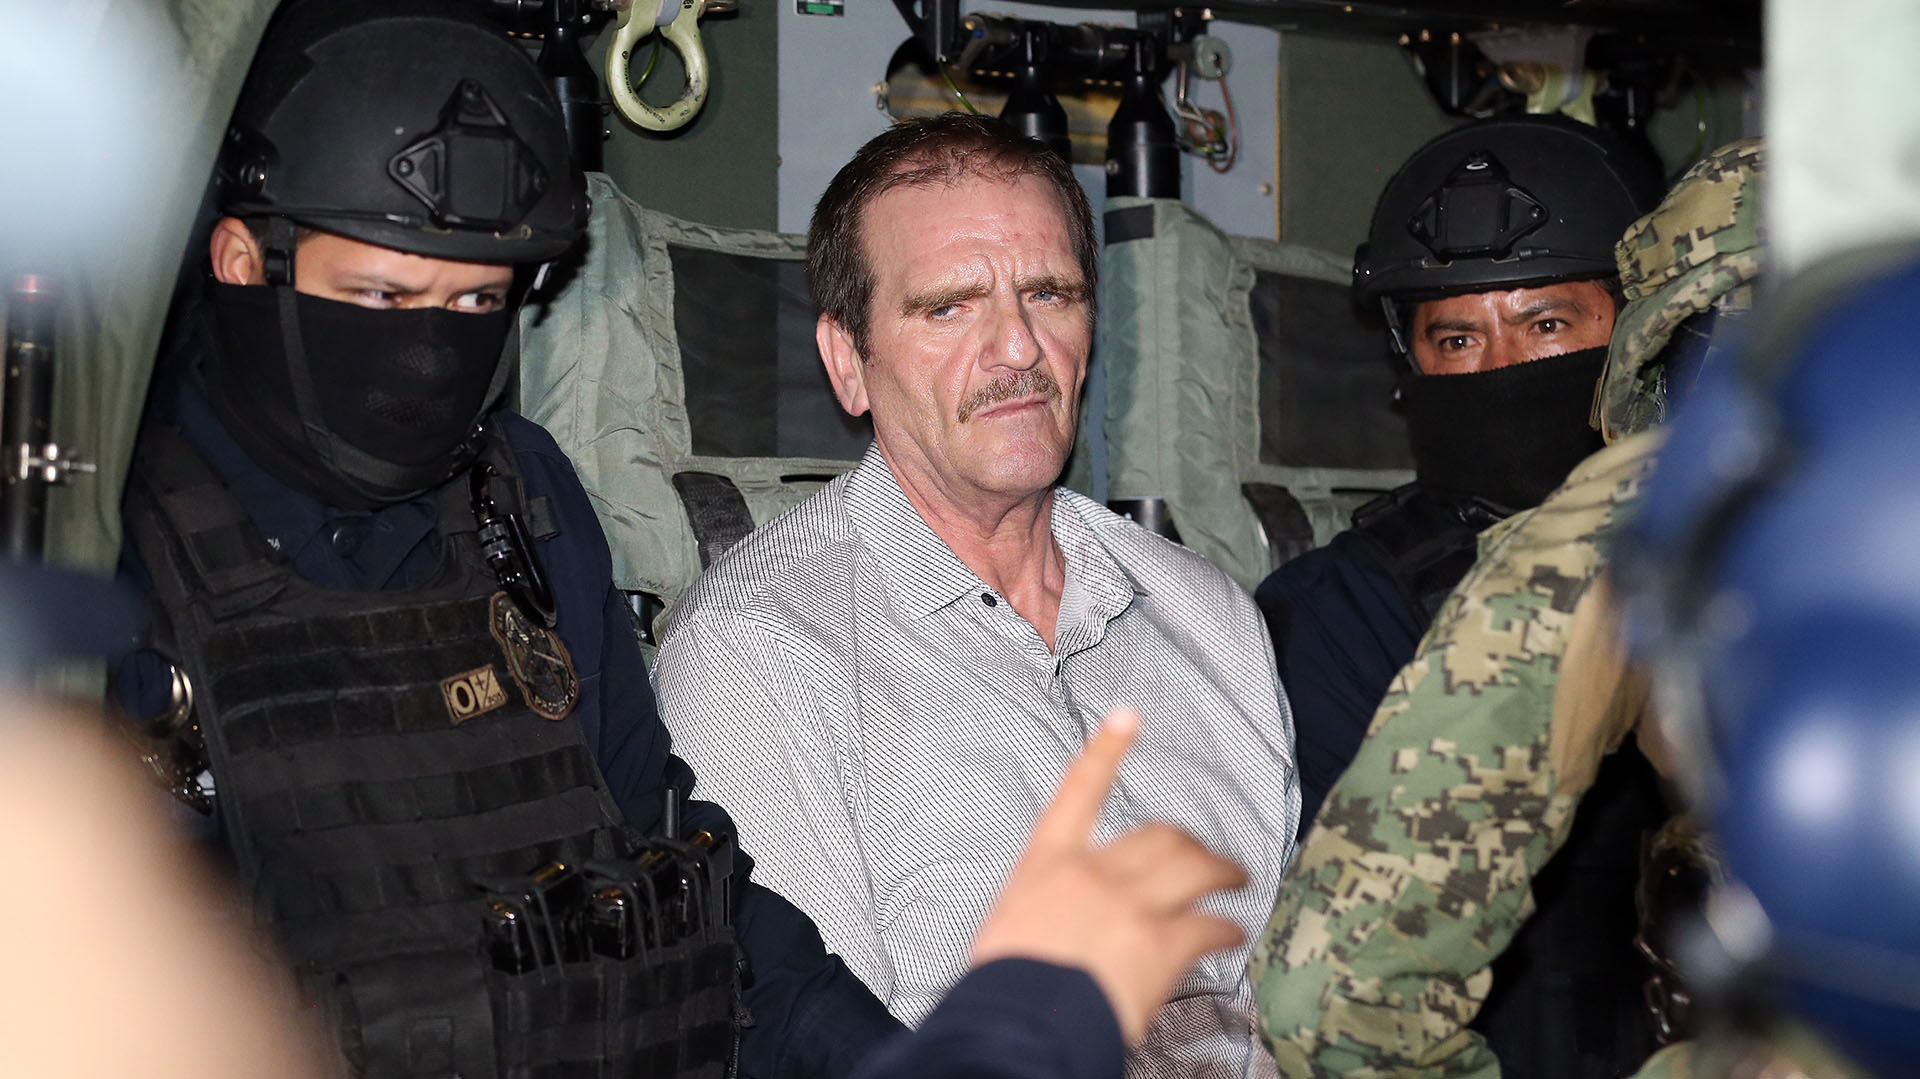 El "Güero" Palma podría quedar fuera de la cárcel apenas se corrobore que no se le persigue en México y EEUU (AFP)